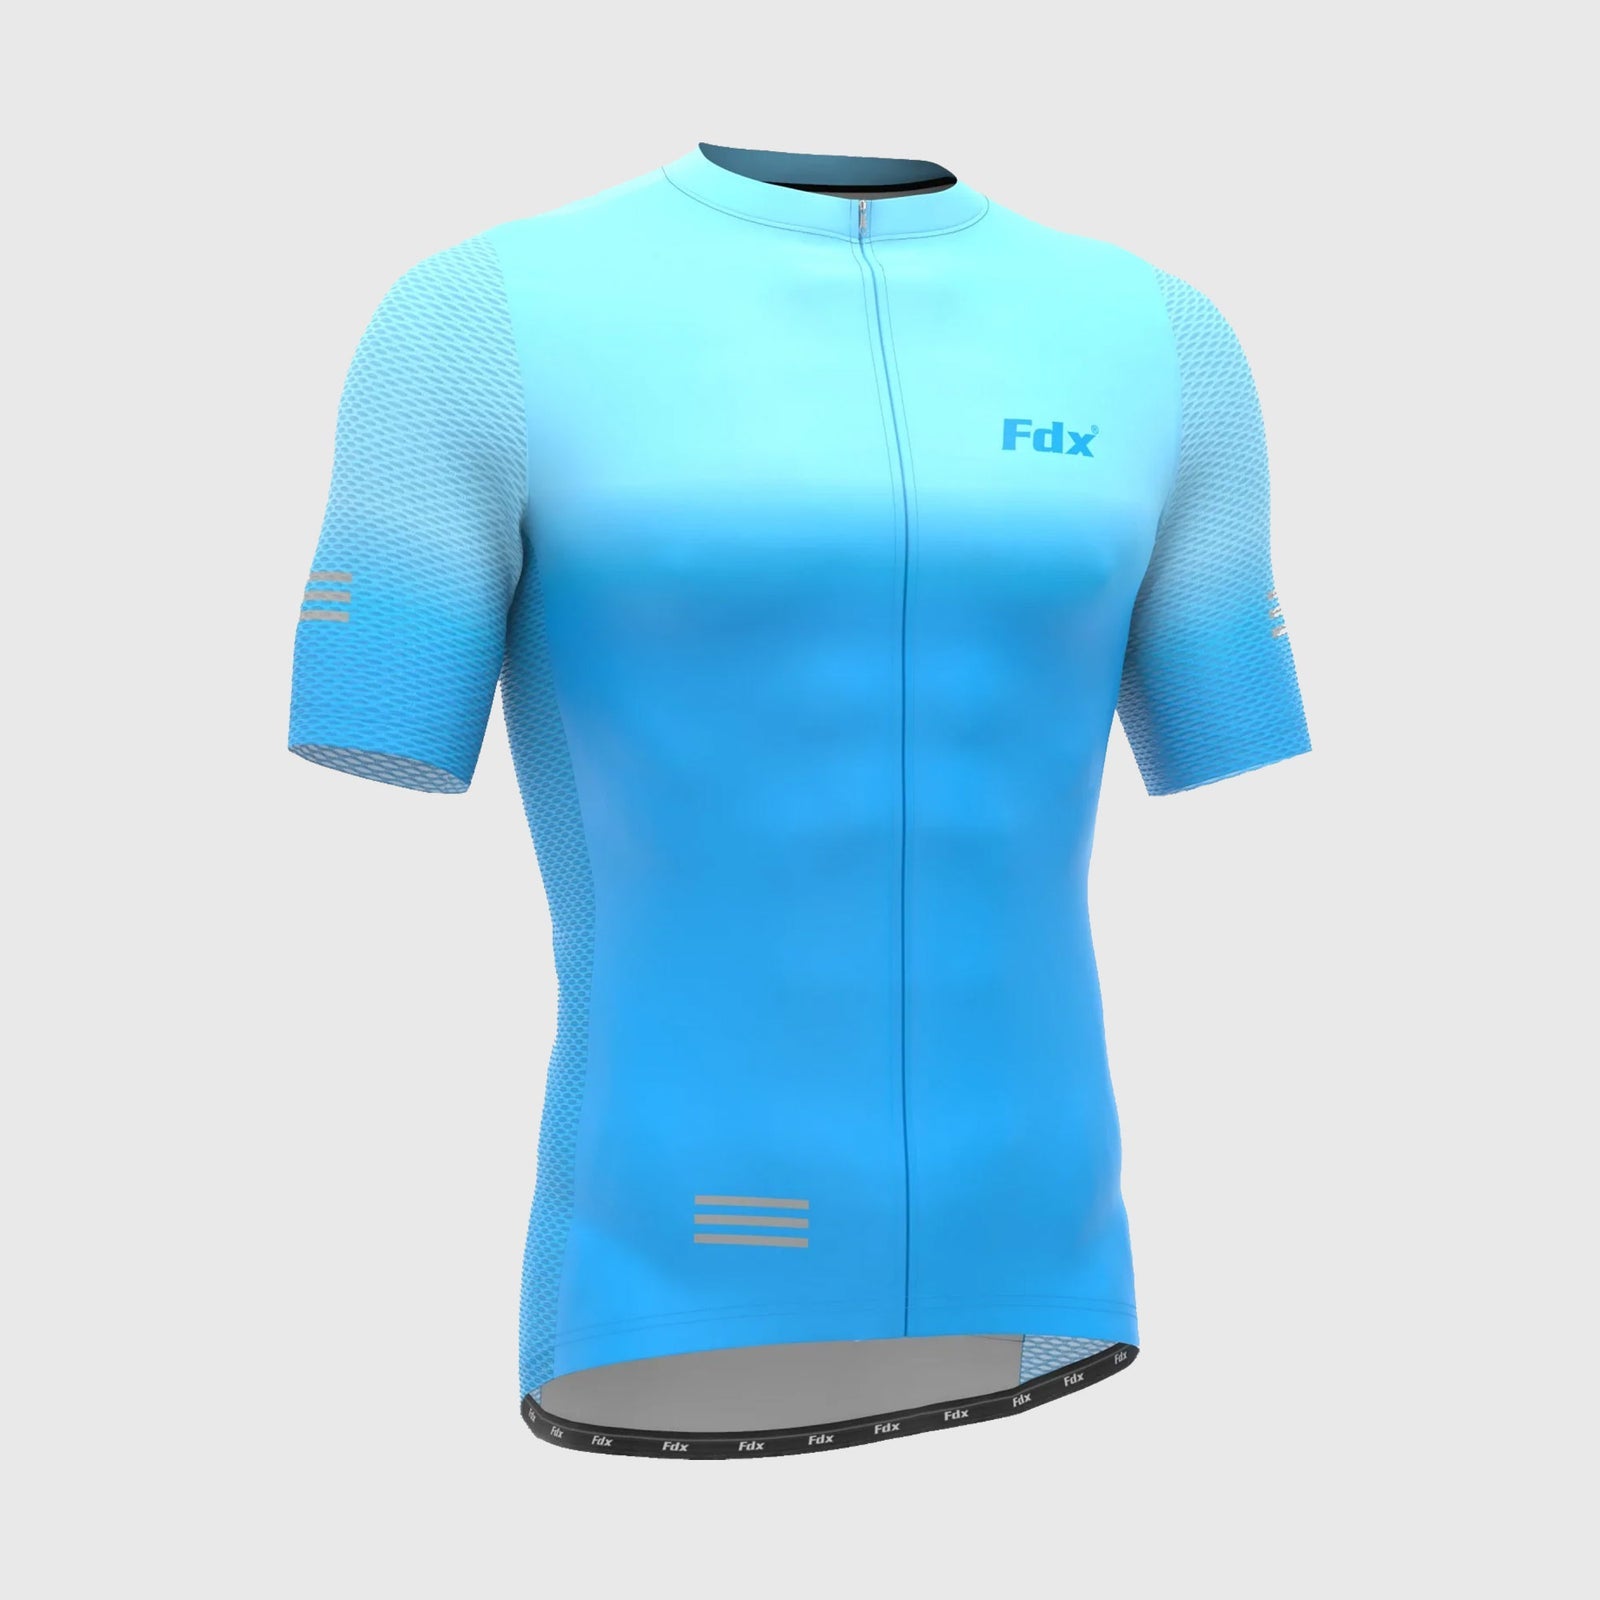 Fdx Mens Blue Short Sleeve Cycling Jersey for Summer Best Road Bike Wear Top Light Weight, Full Zipper, Pockets & Hi-viz Reflectors - Duo